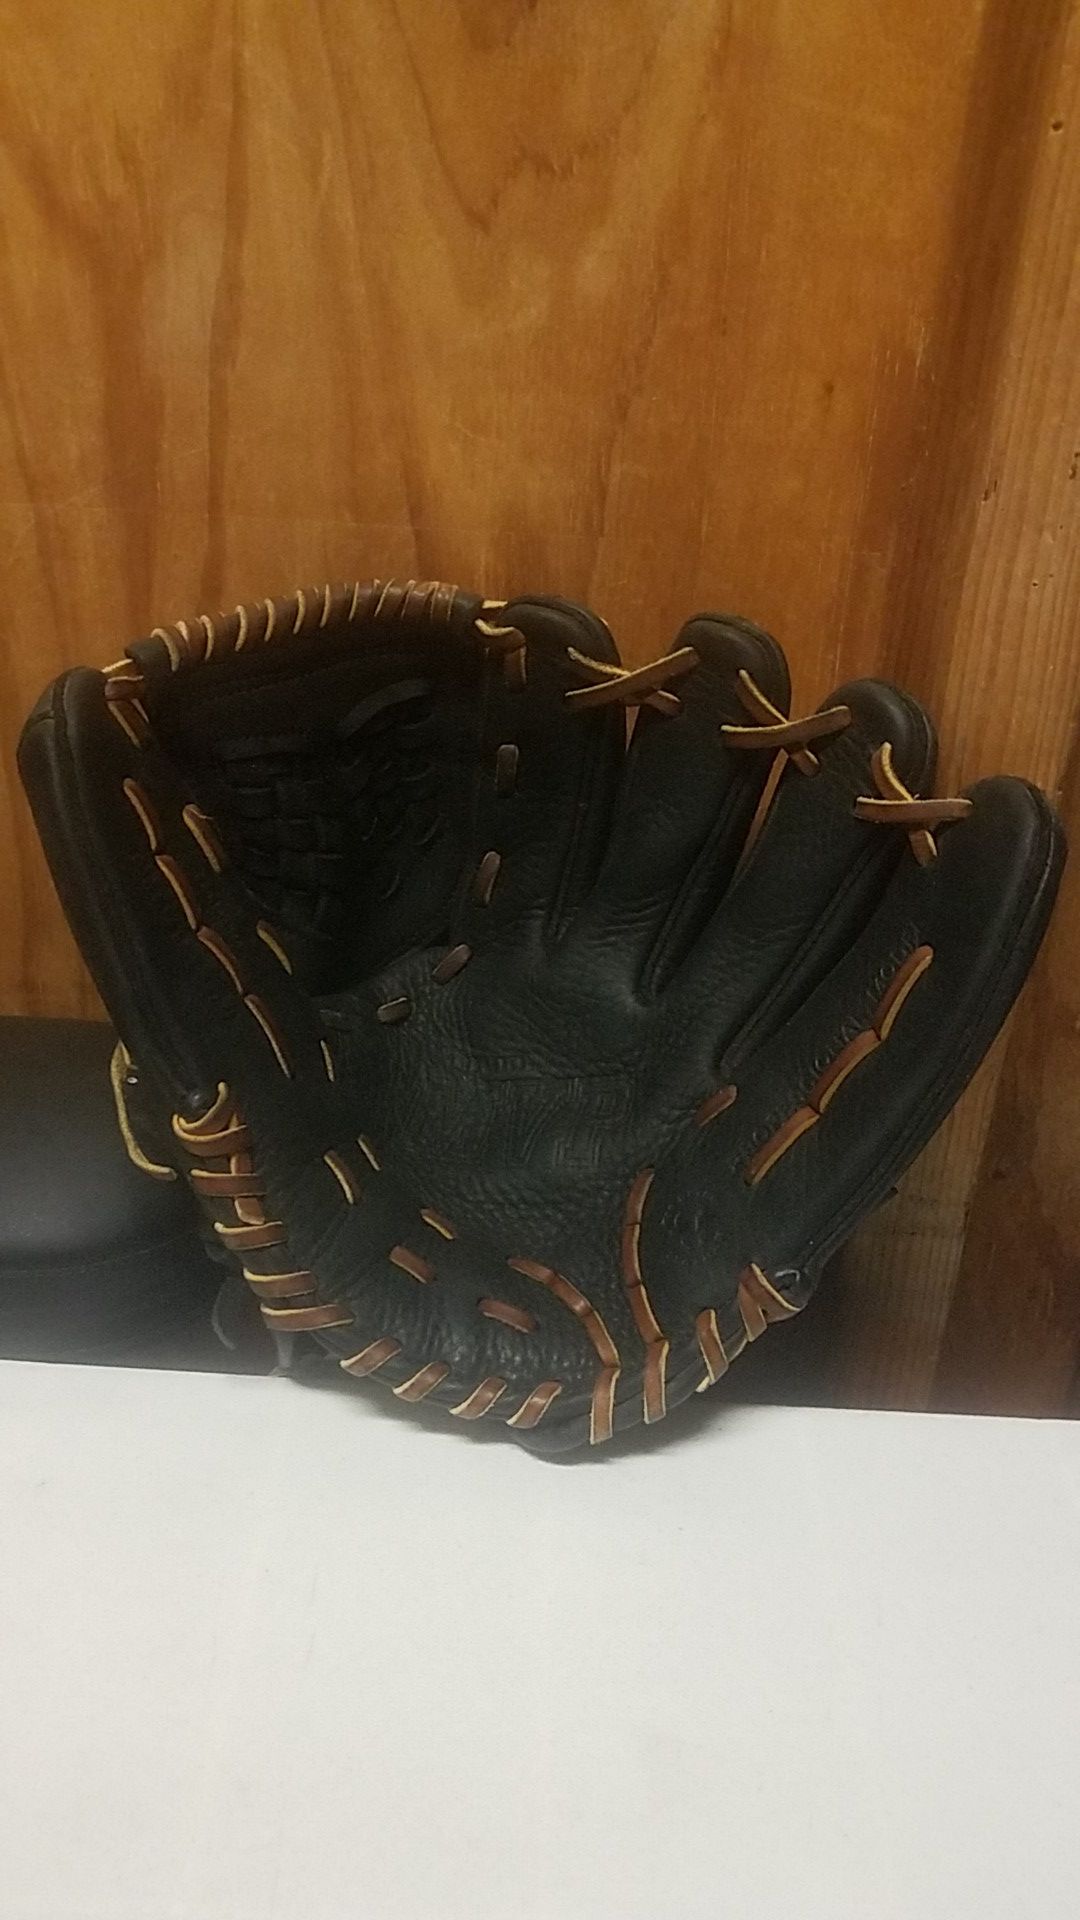 Mizuno MVP Series GMVP Infield Baseball Glove ,